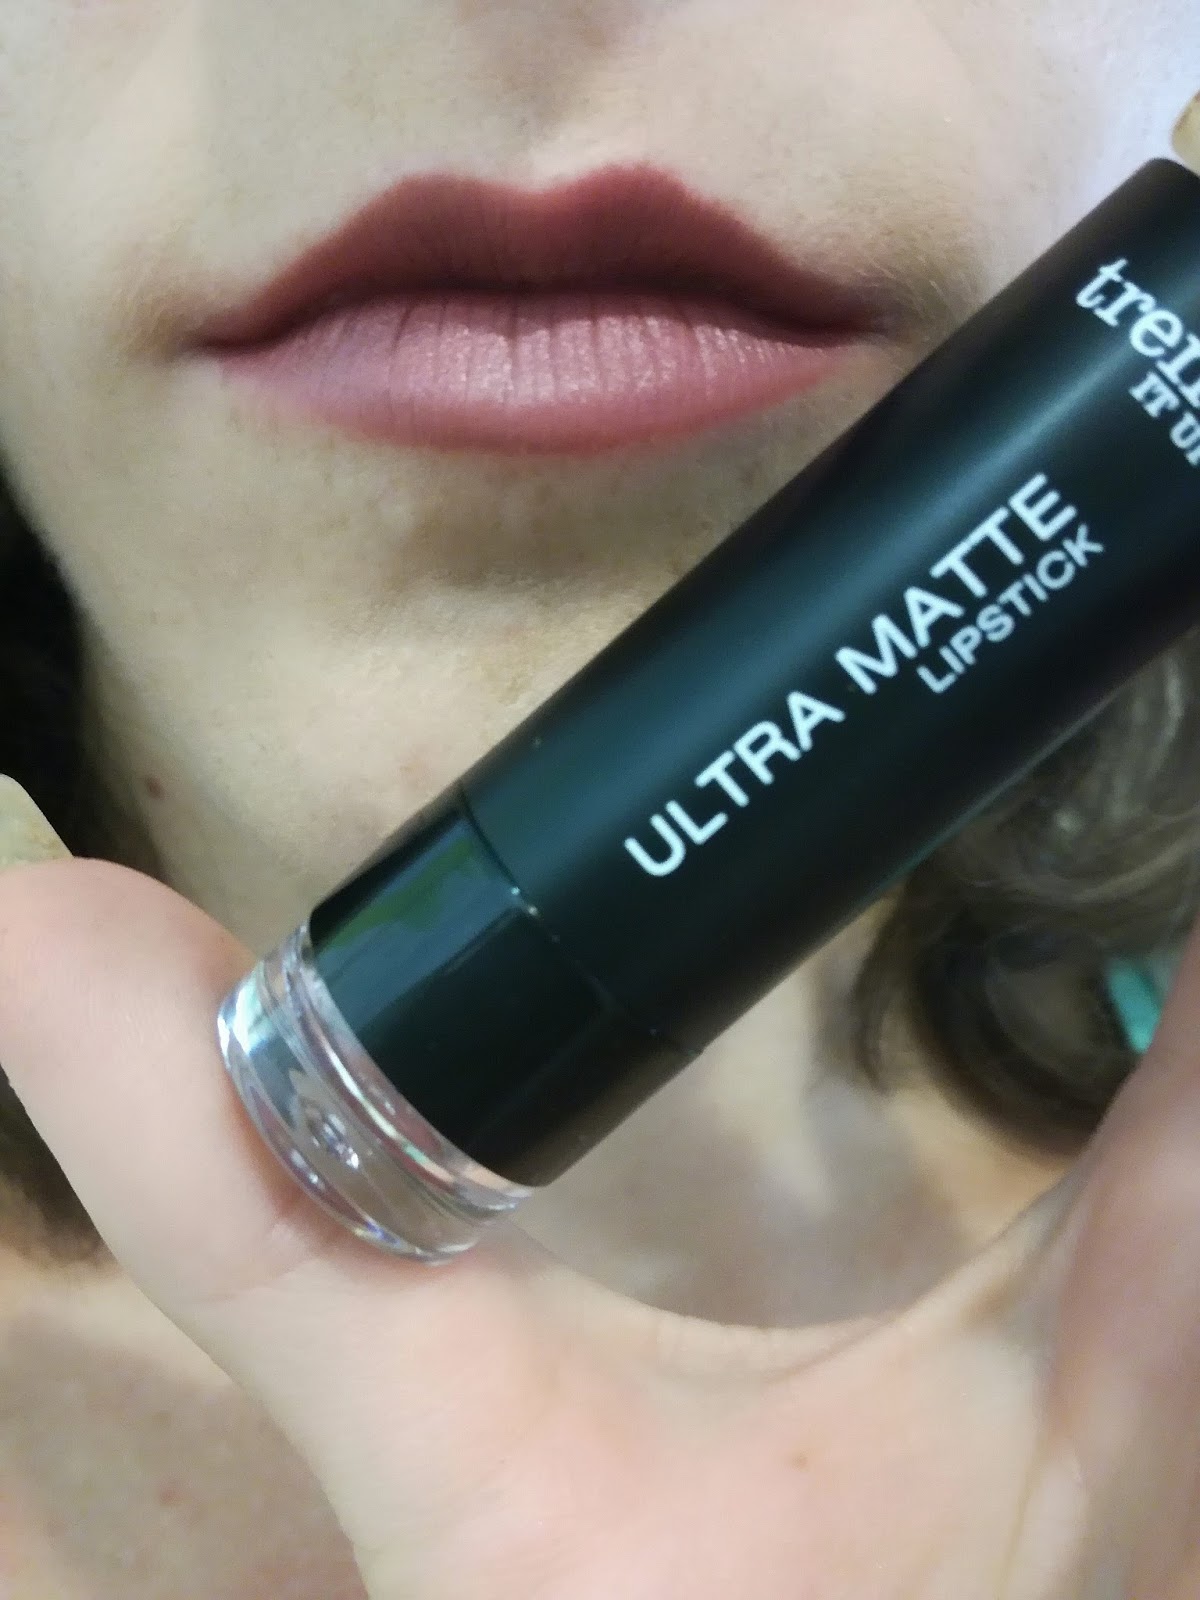 trend-it-up-dm-make-up-swatch-ultra-matte-lipstick-470